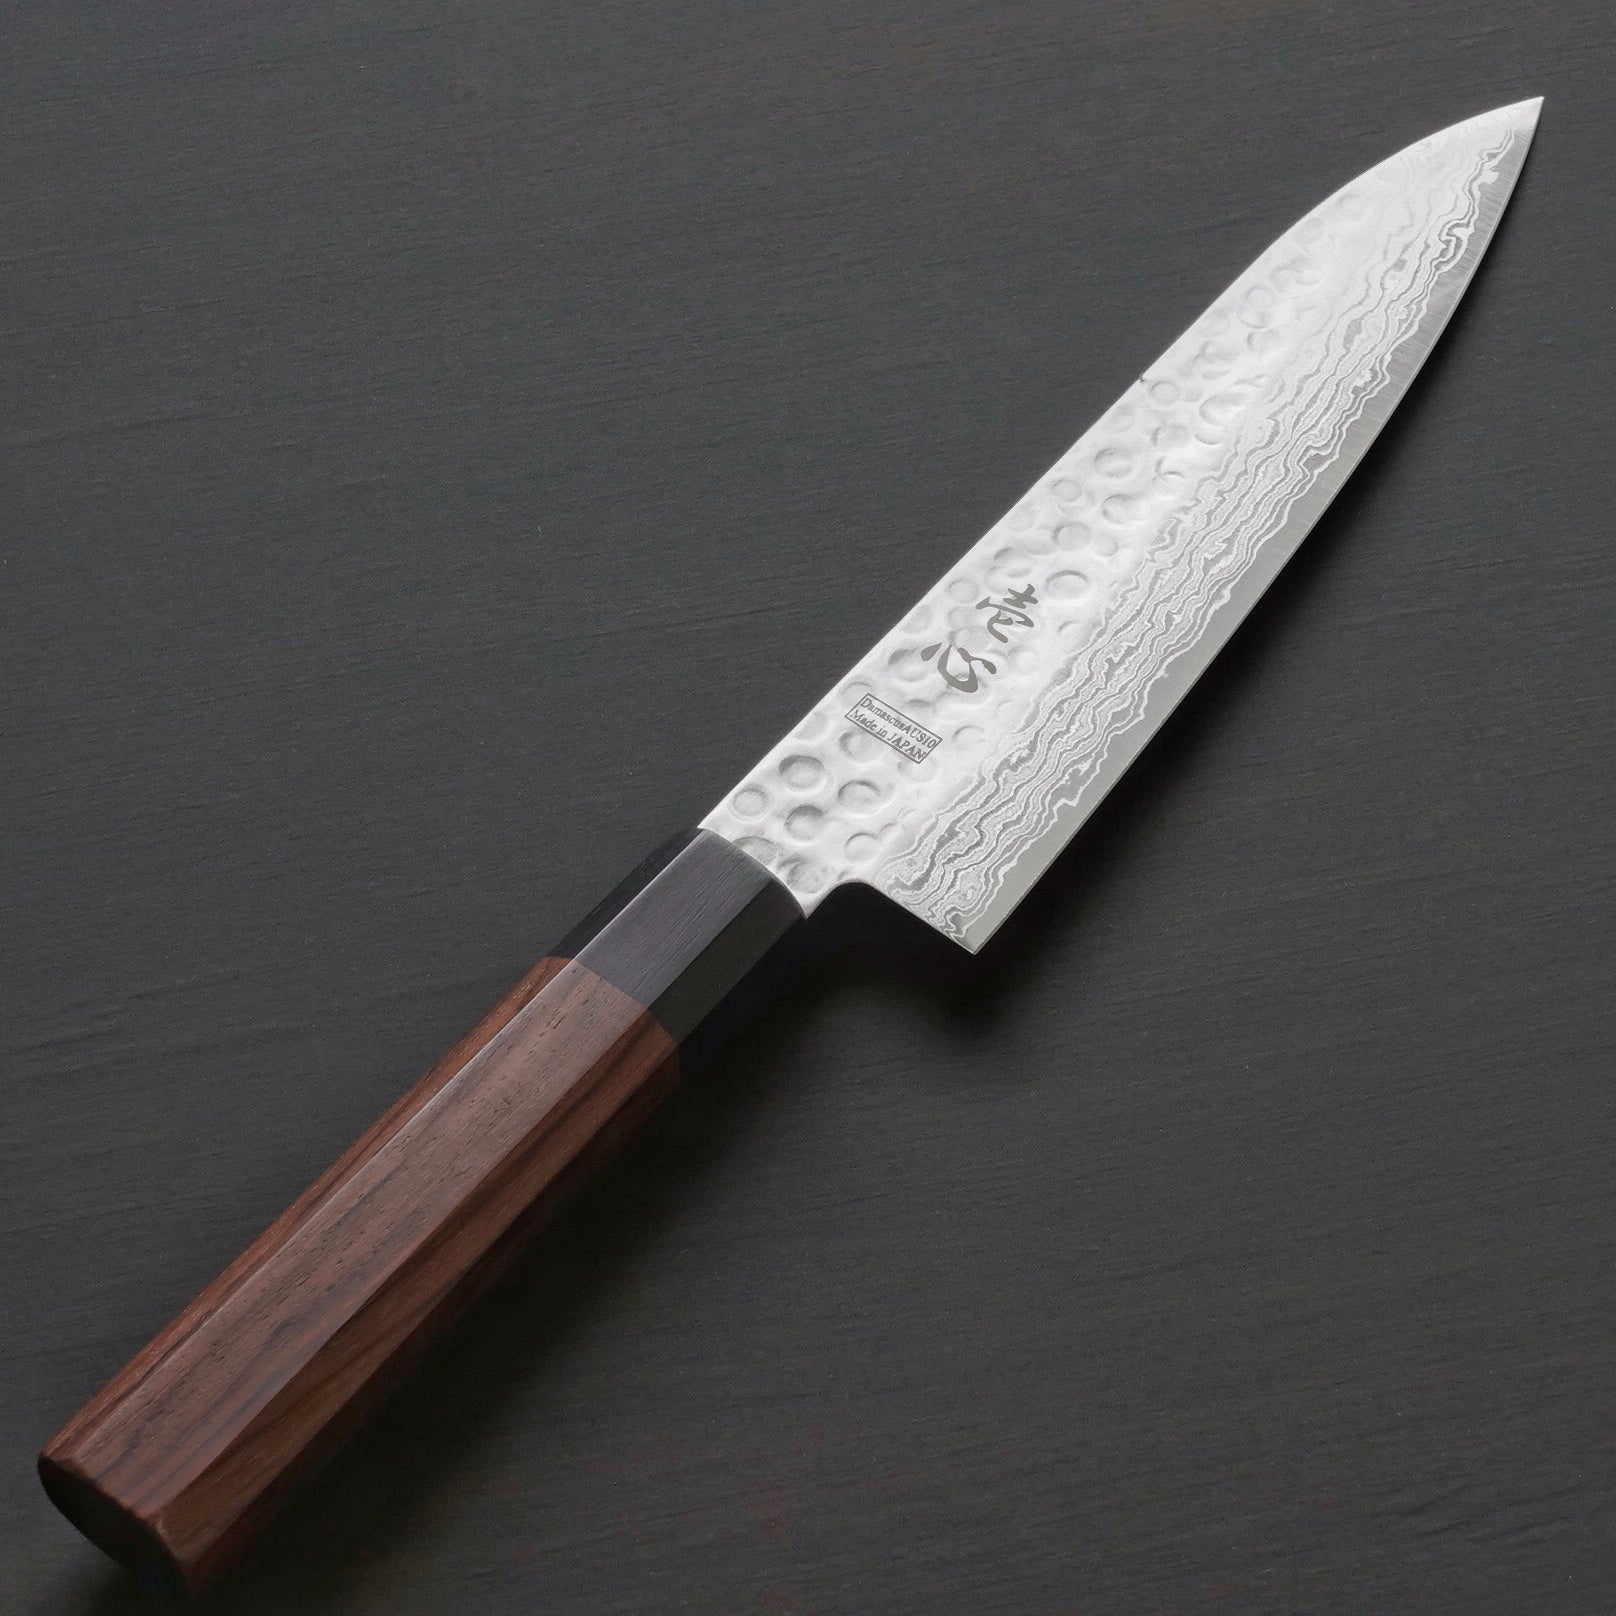 Master Kitchen - Mongolian Knife 3 Layers Super Sharp